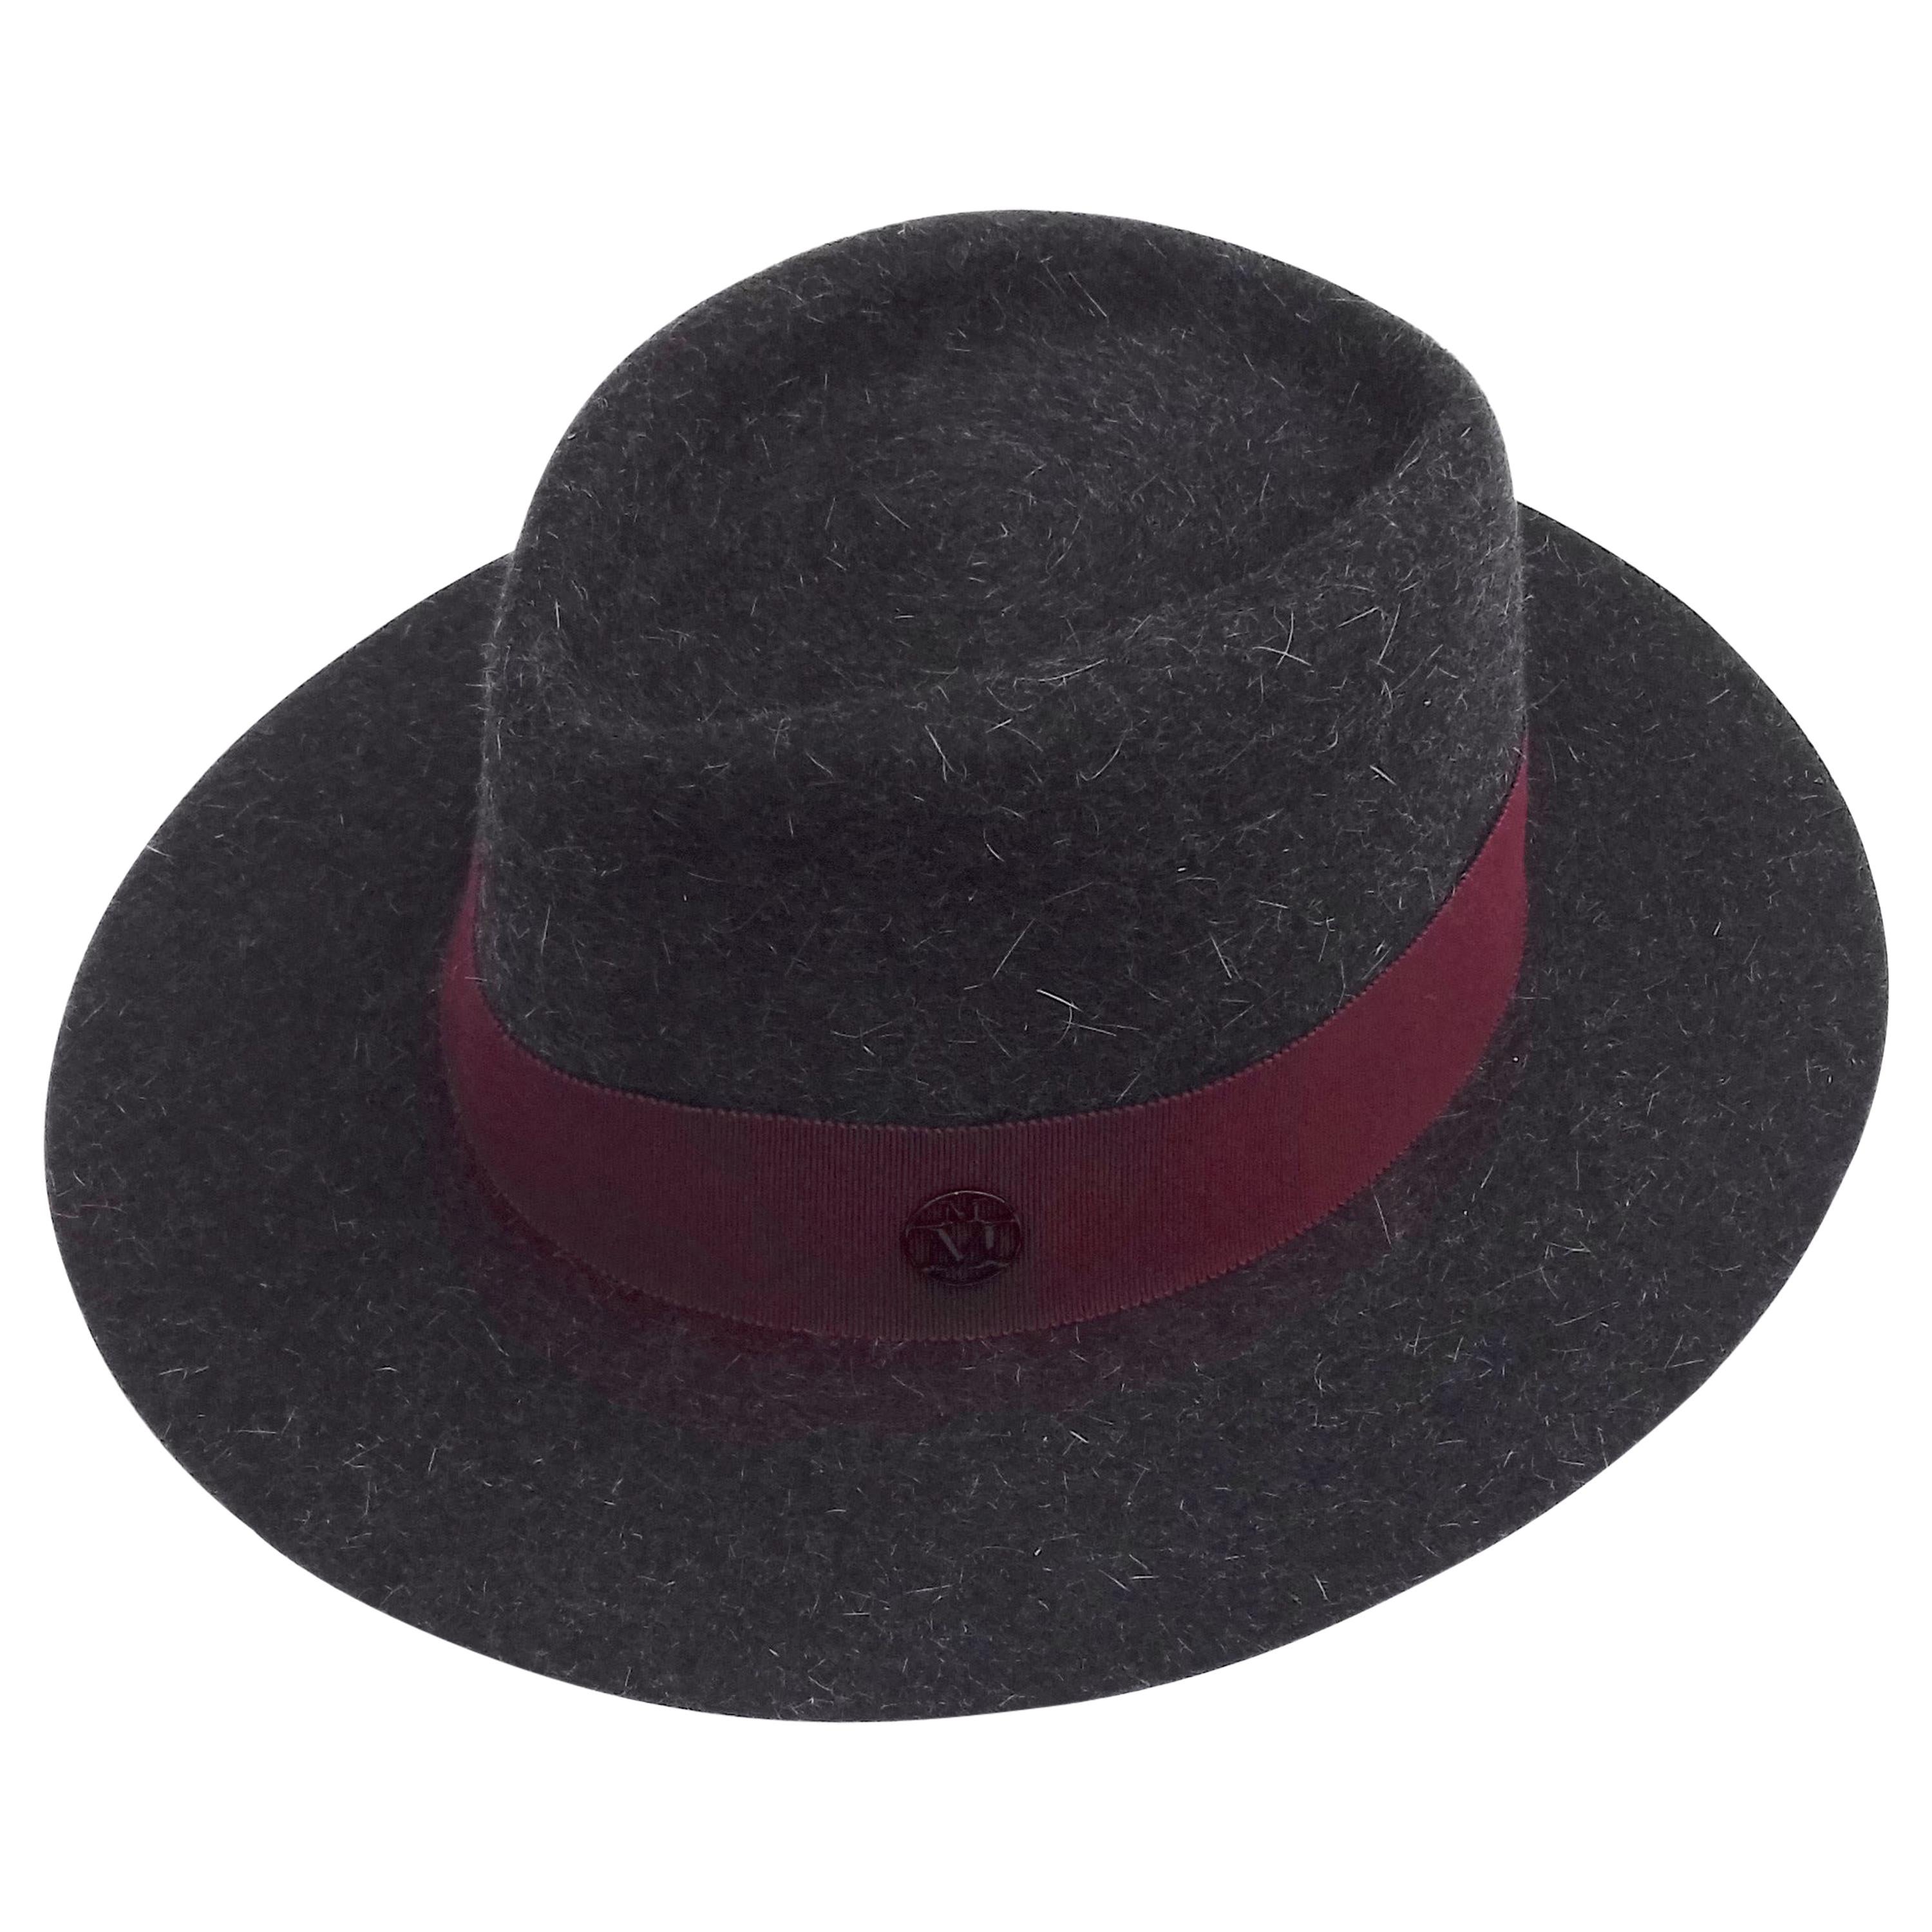 MAISON MICHEL Paris Andre Fedora Felt Hat in Charcoal Grey Size M